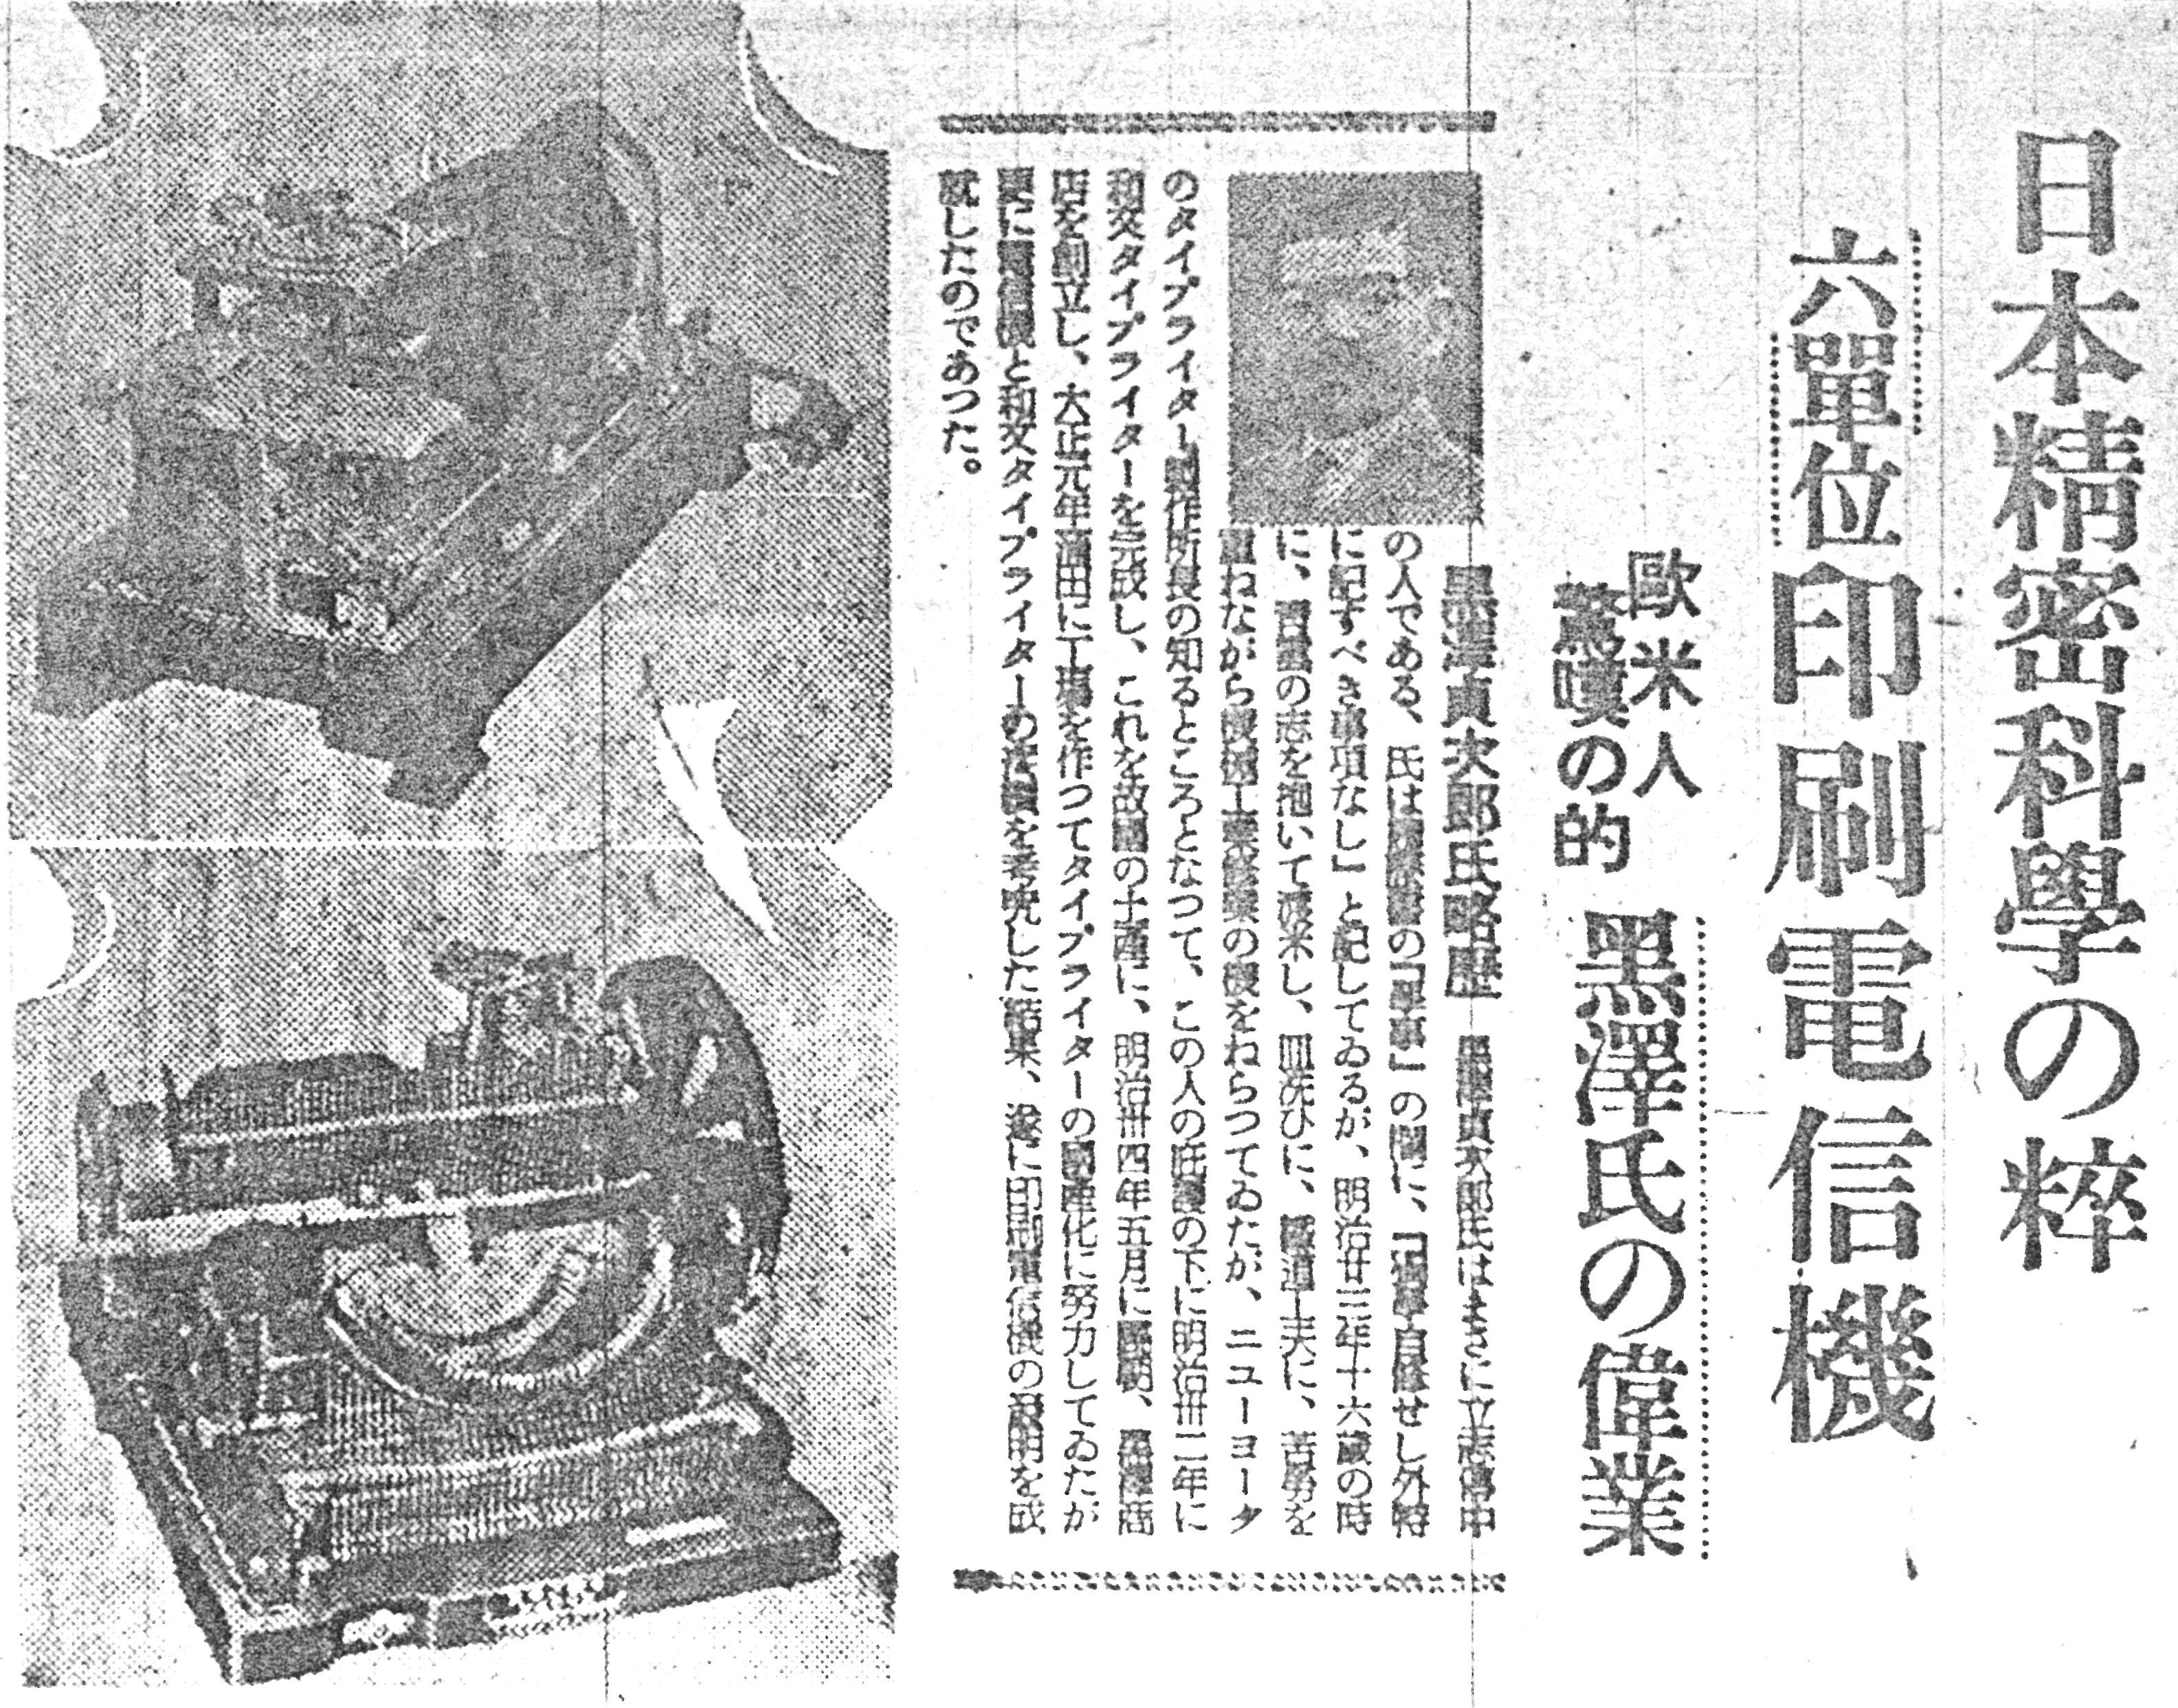 黒沢の通信賞受賞を伝える記事（東京日日新聞、1940年5月1日）